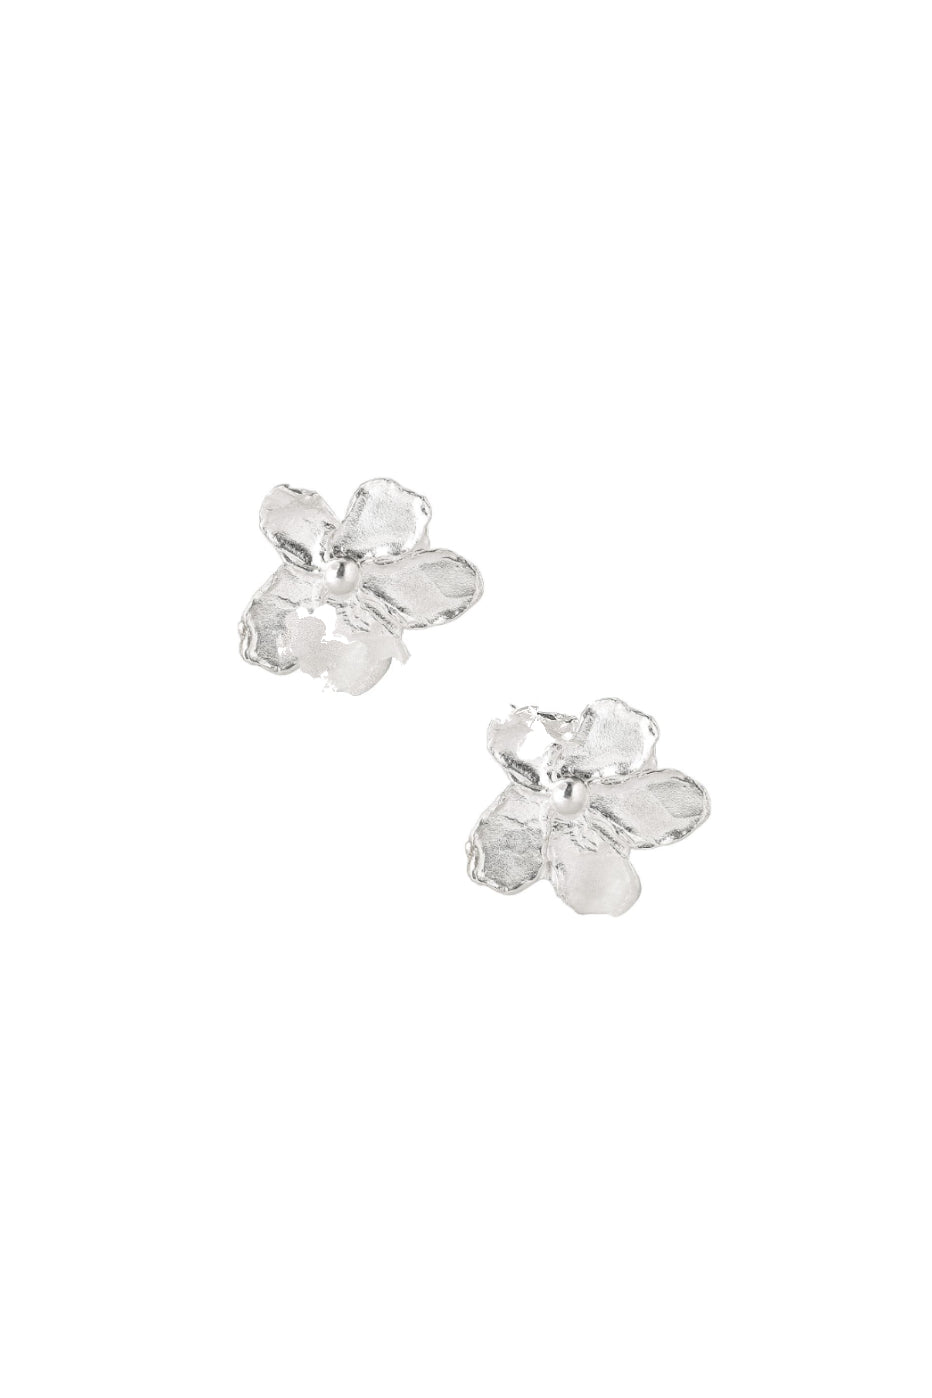 Elhanati Jardin Small Flower Earrings